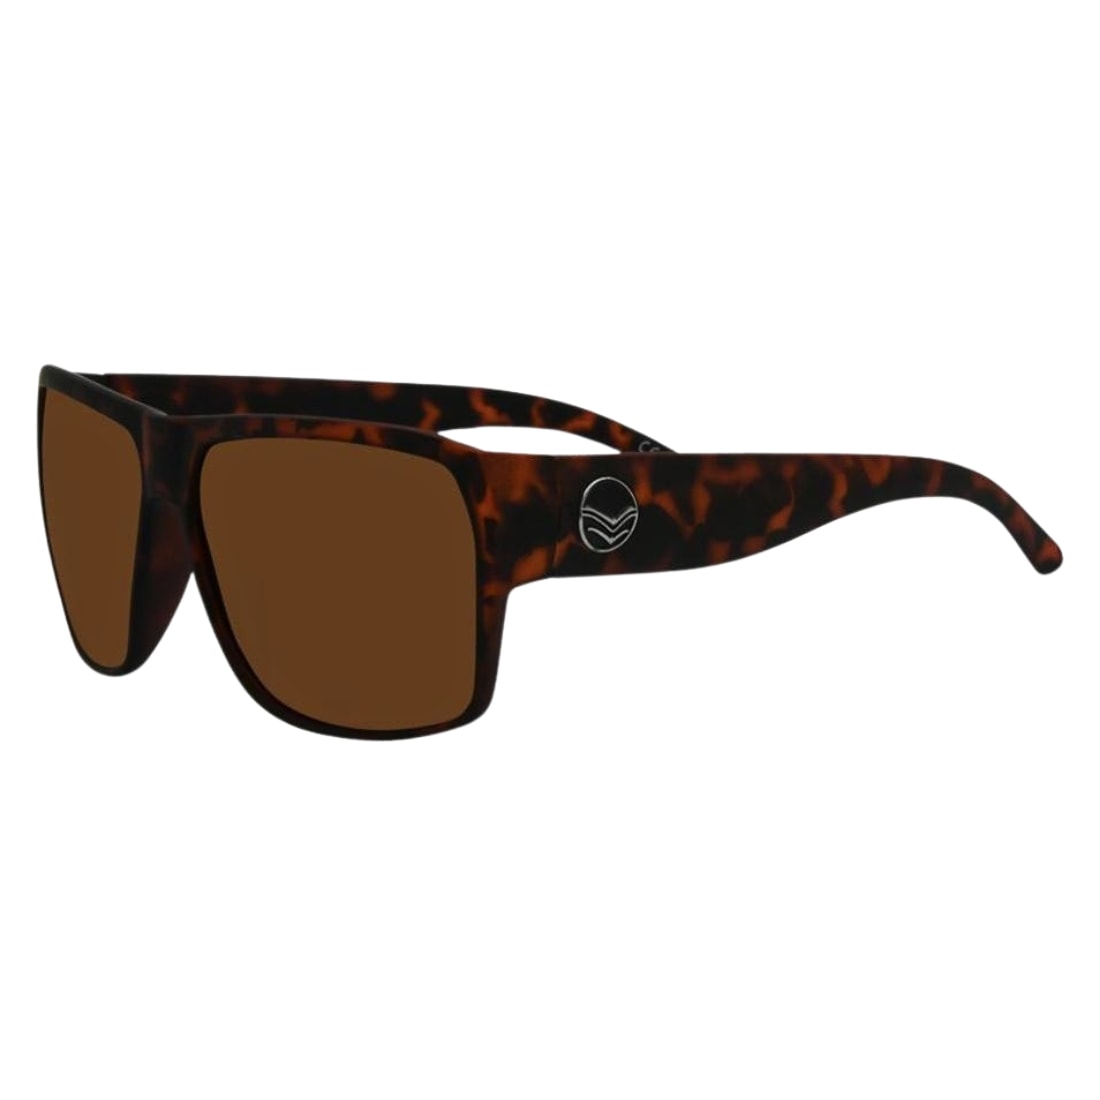 I-Sea Nick I Sunglasses - Tortoise/Brown Polarised